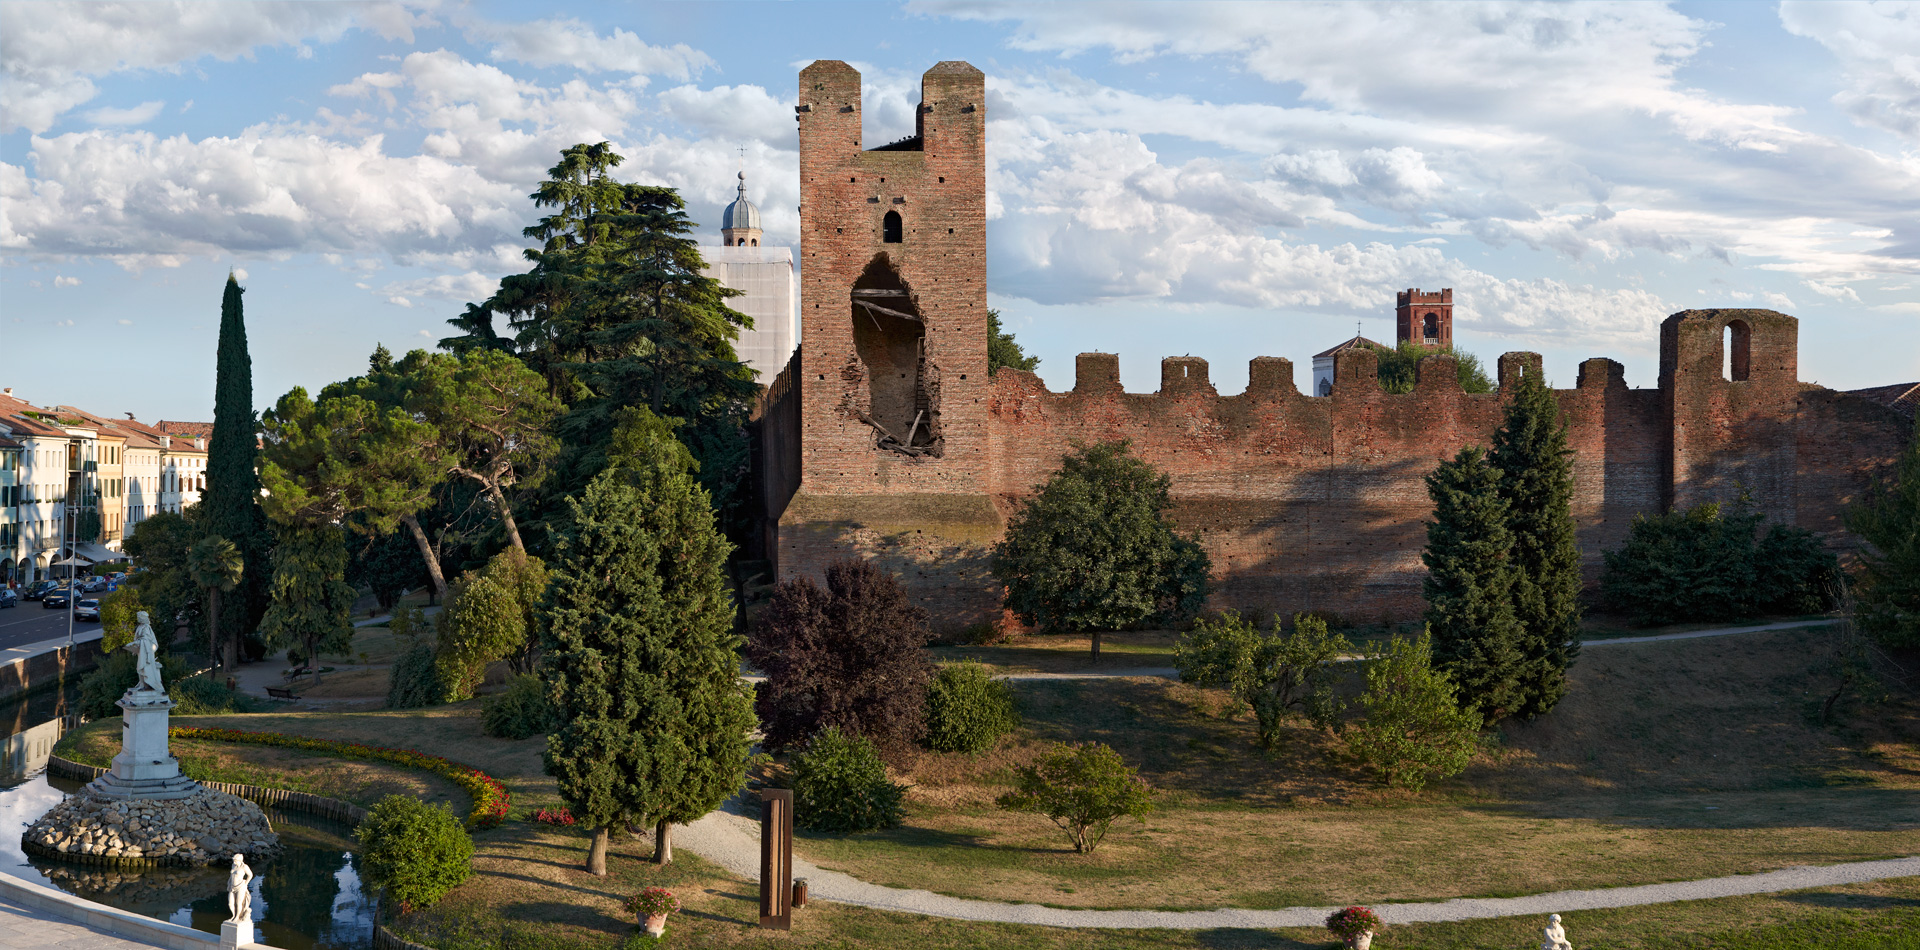 Le Nostre Mura - Castelfranco Veneto vuole salvare le mura cittadine